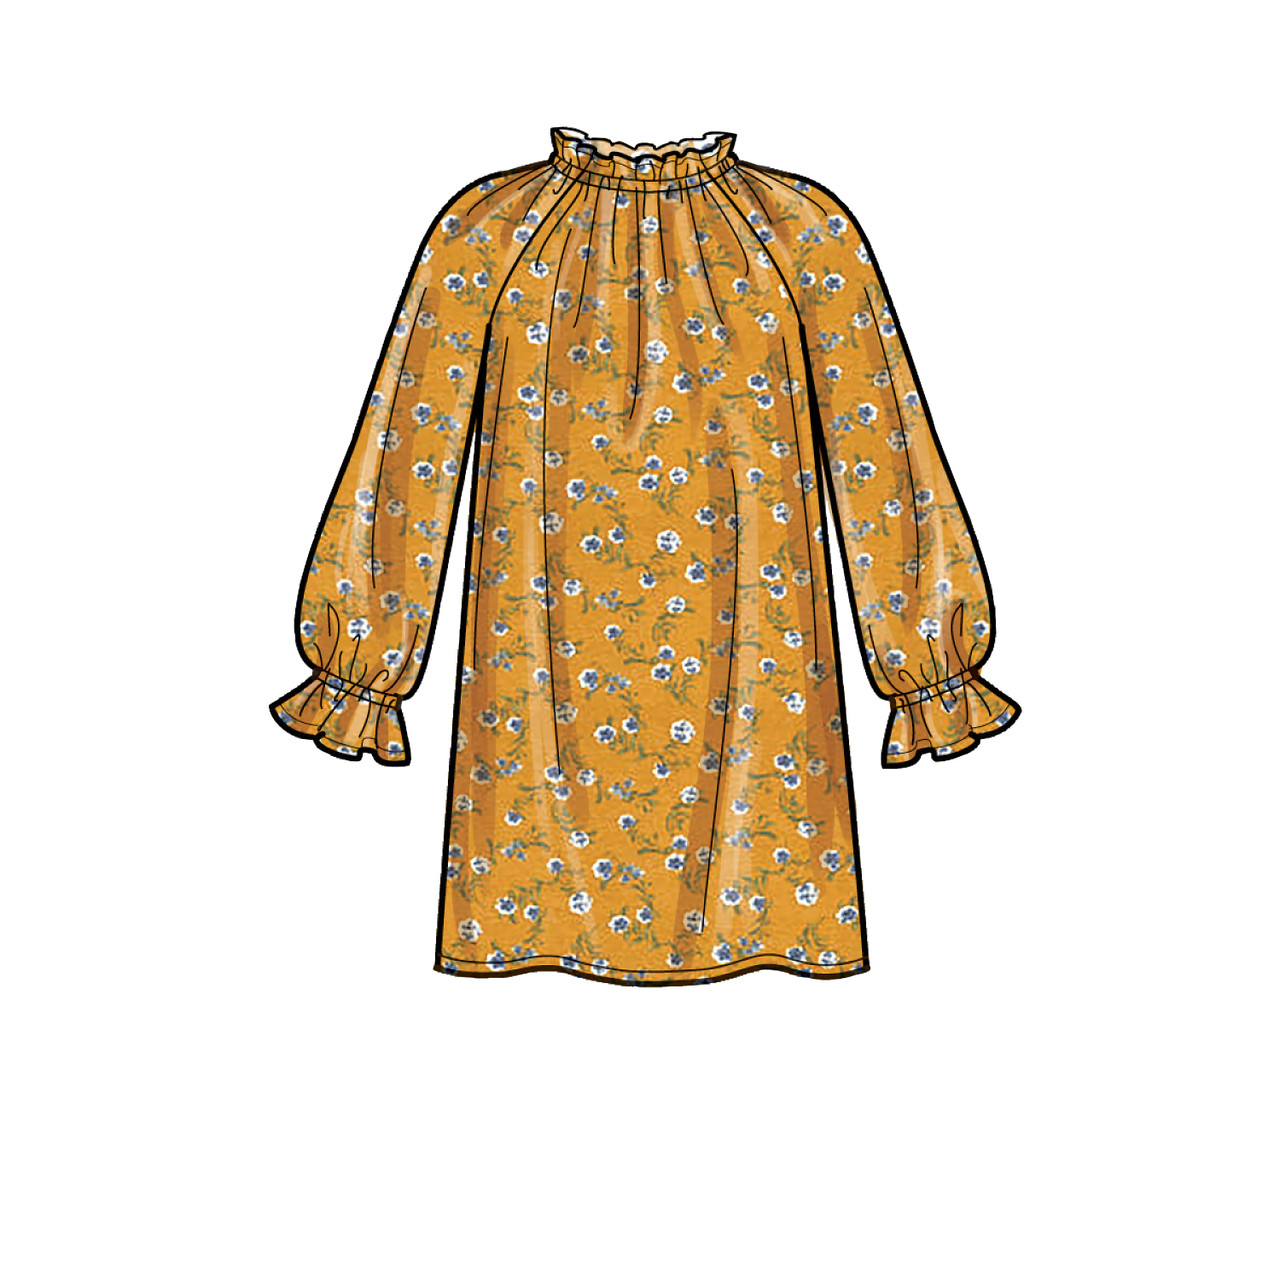 Patron Simplicity 9393 - Robe, tunique, haut et pantalon pour enfant 3 à 8 ans